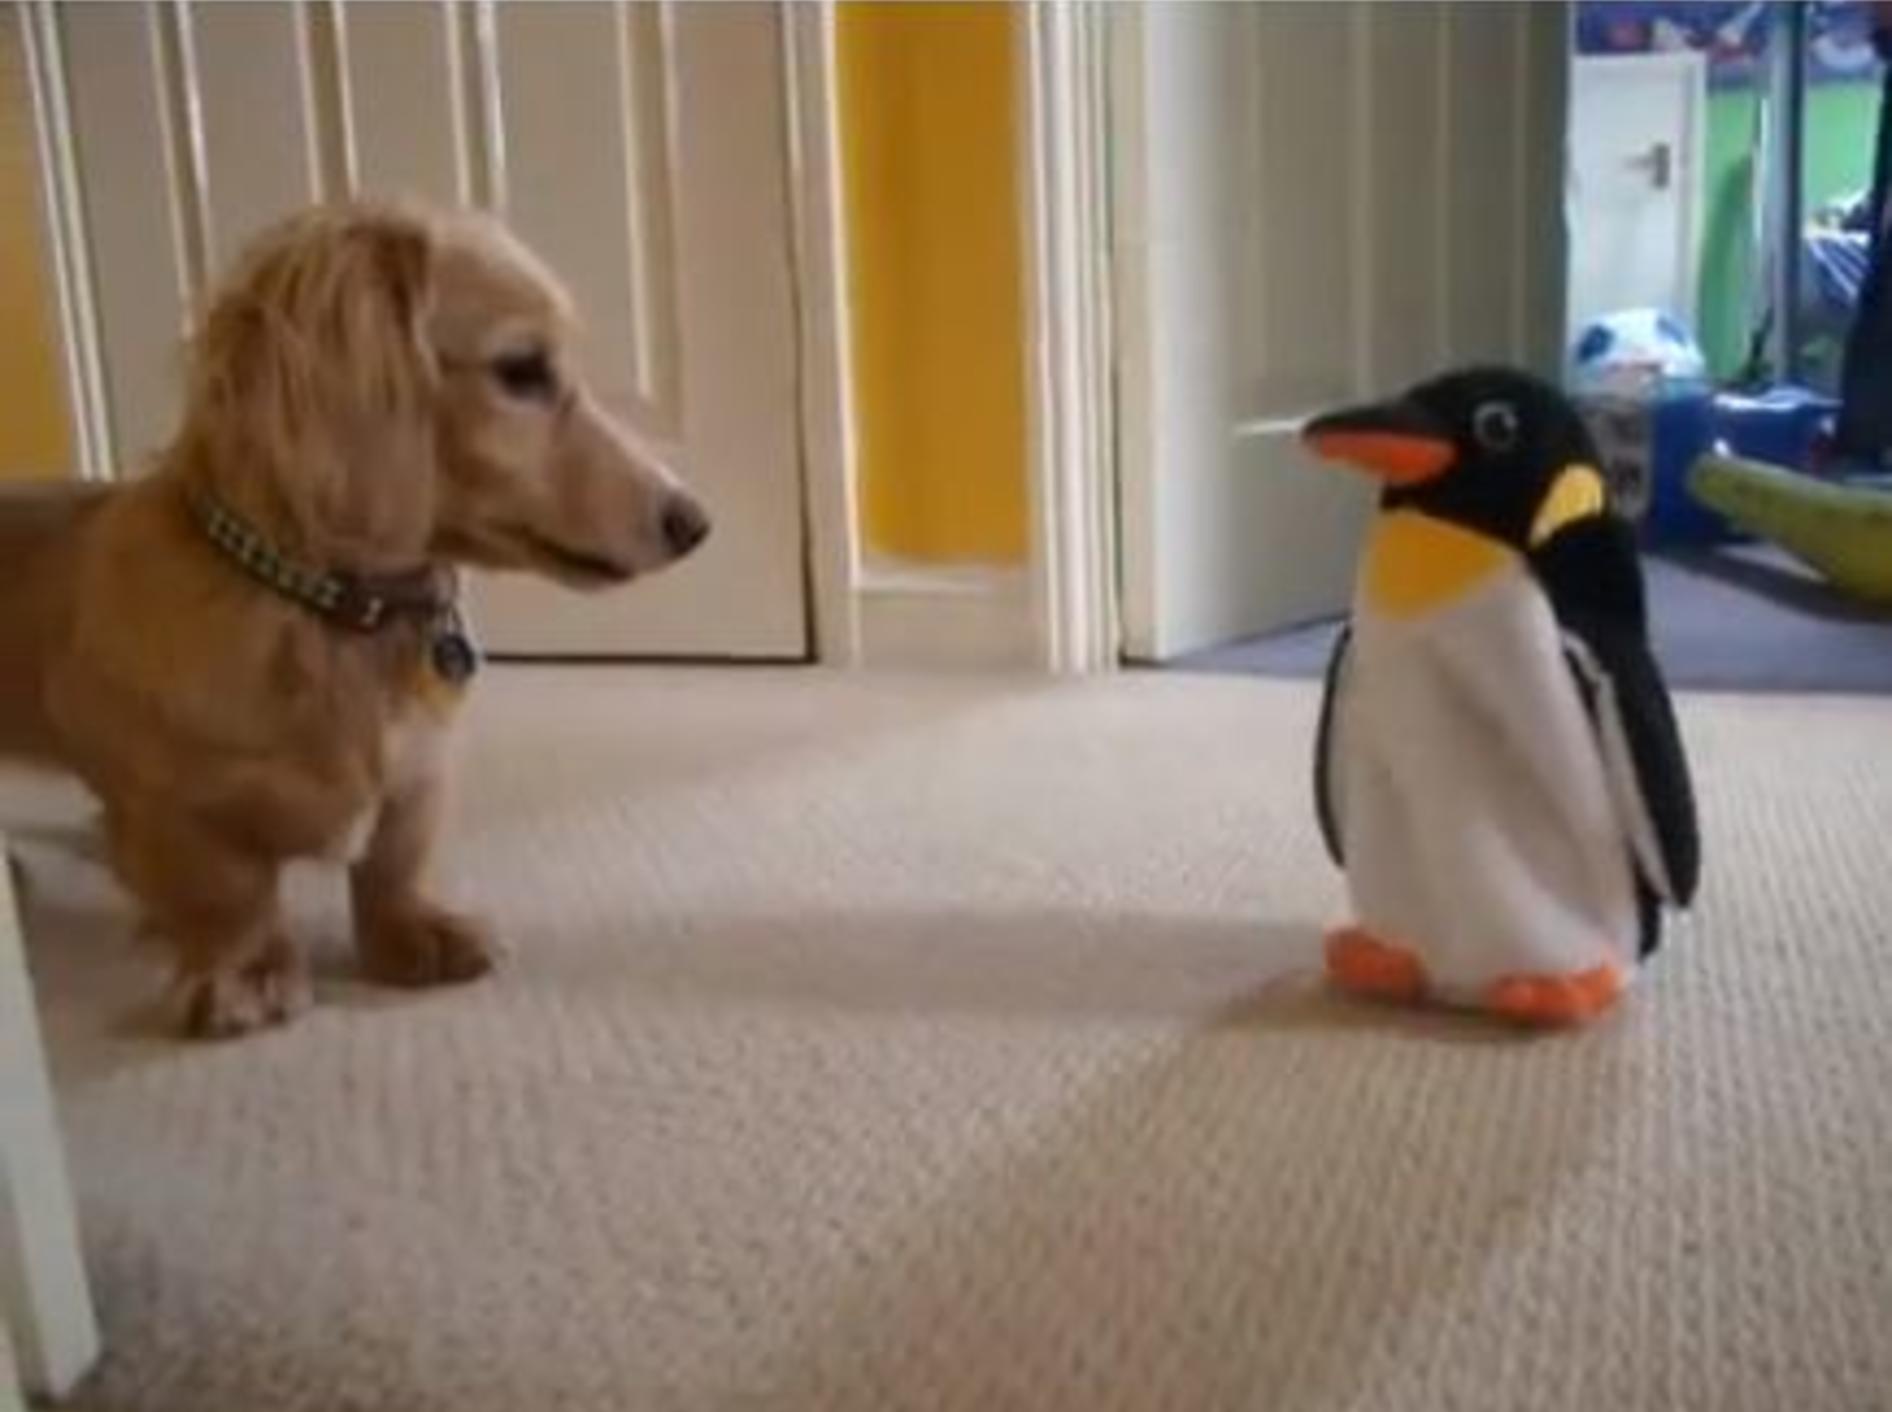 Spielspaß für lustige Hunde: Der Dackel und der Pinguin — Bild: Youtube / dachlovers